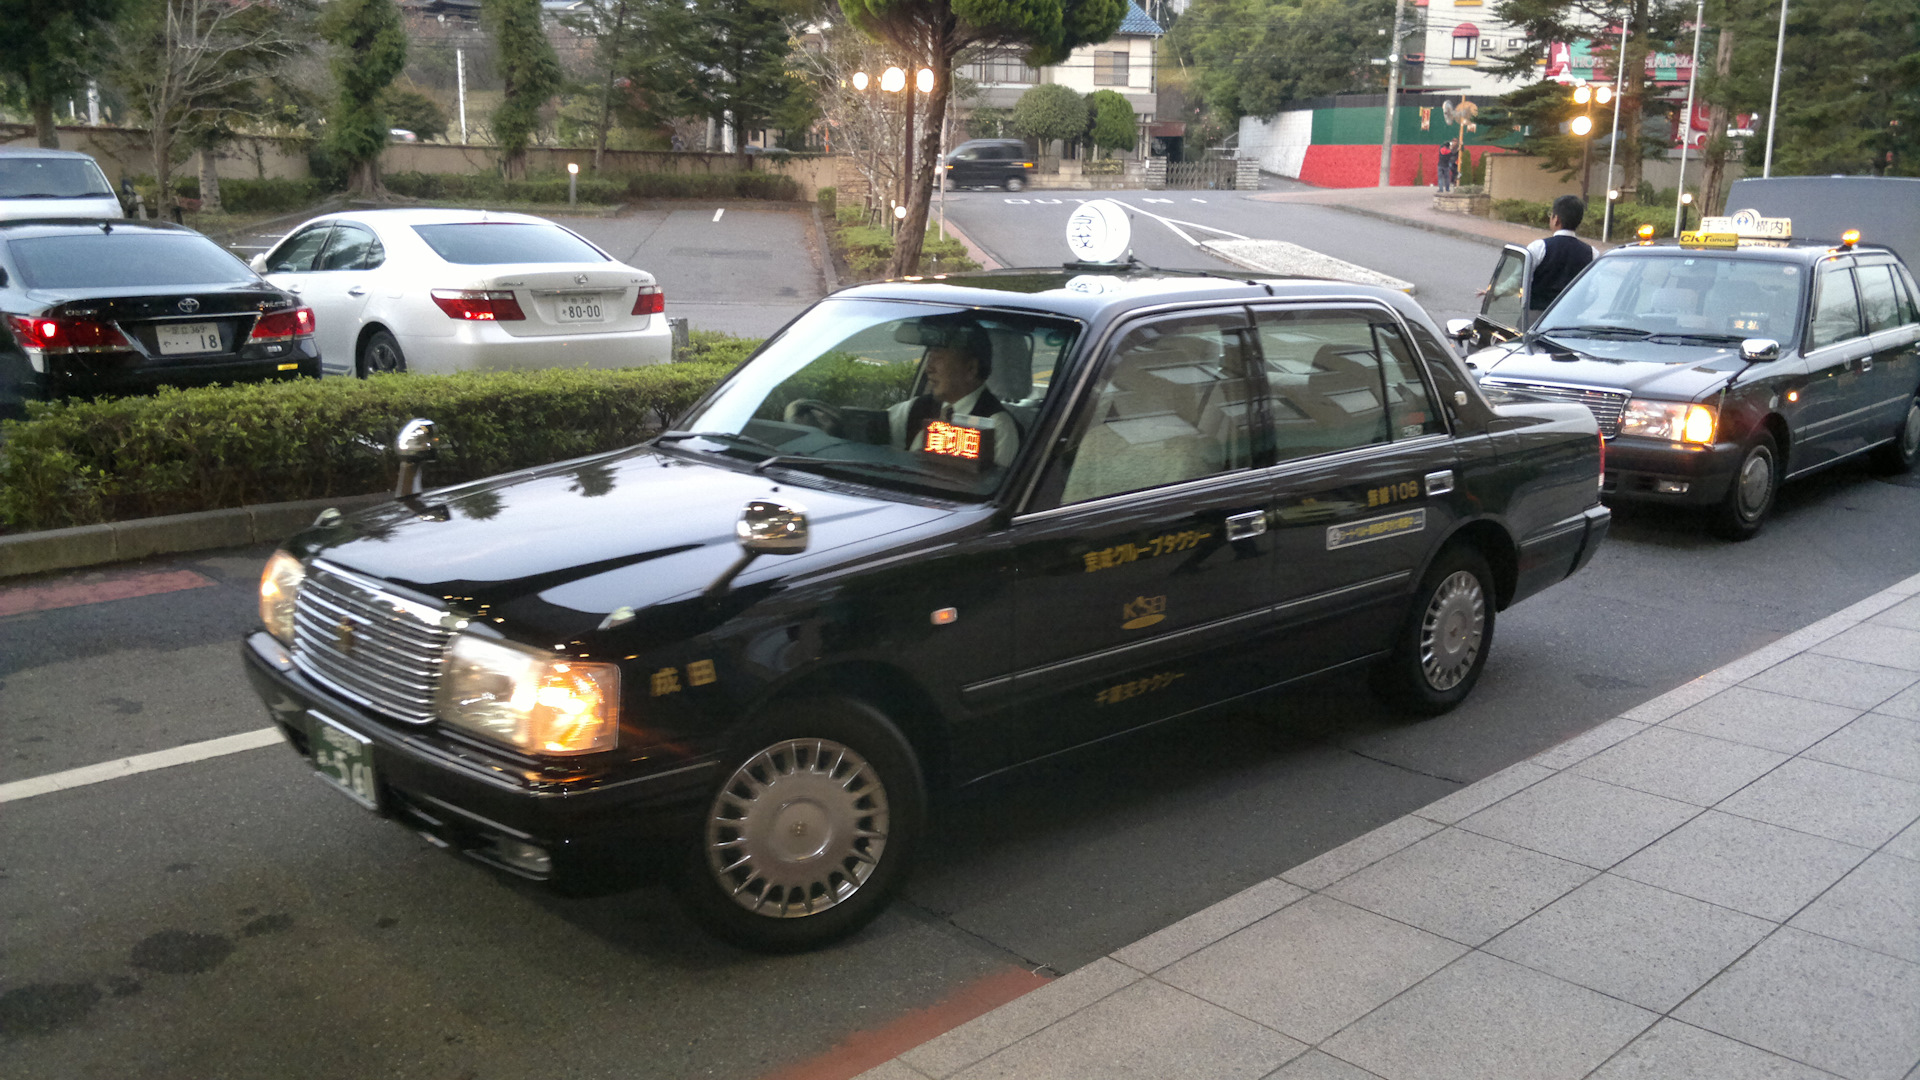 такси в японии марки автомобилей